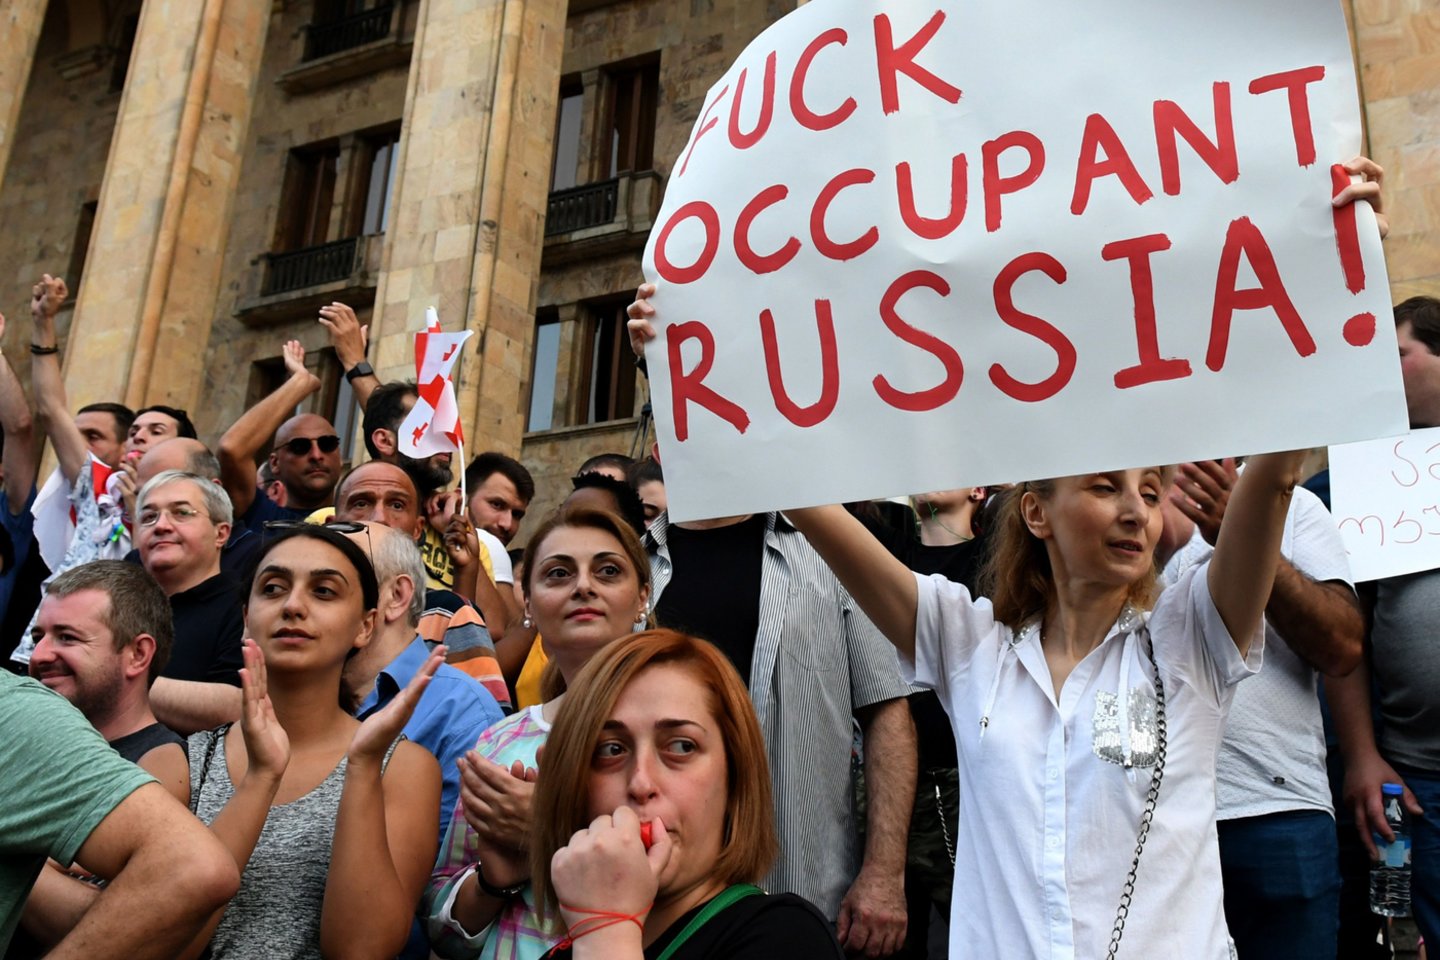 Europos Žmogaus Teisių Teismas (EŽTT) nurodė Rusijai sumokėti bendrą 75 tūkst. eurų kompensaciją šalies piliečiams, pateikusiems devynis skundus dėl jų teisės rengti taikius protestus pažeidimo, sakoma antradienį paskelbtame teismo pranešime.<br>AFP/Scanpix nuotr.